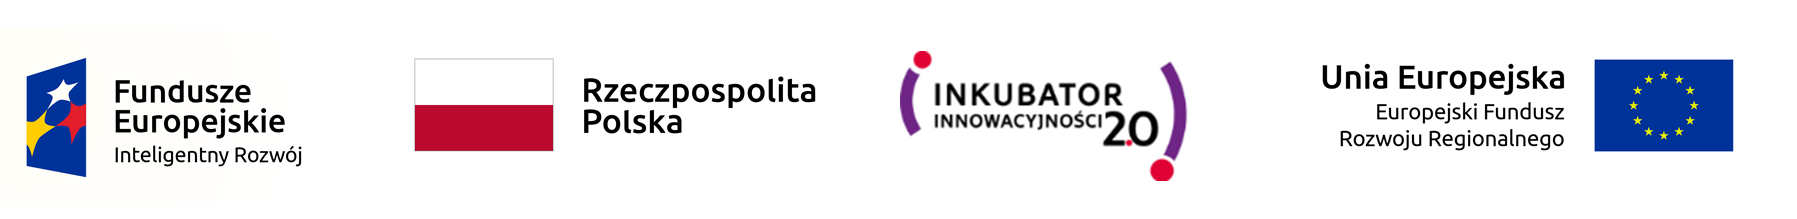 Logotypy Fundusze Europejskie, Rzeczpospolita Polska, Inkubator Innowacyjności 2.0, Unia Europejska